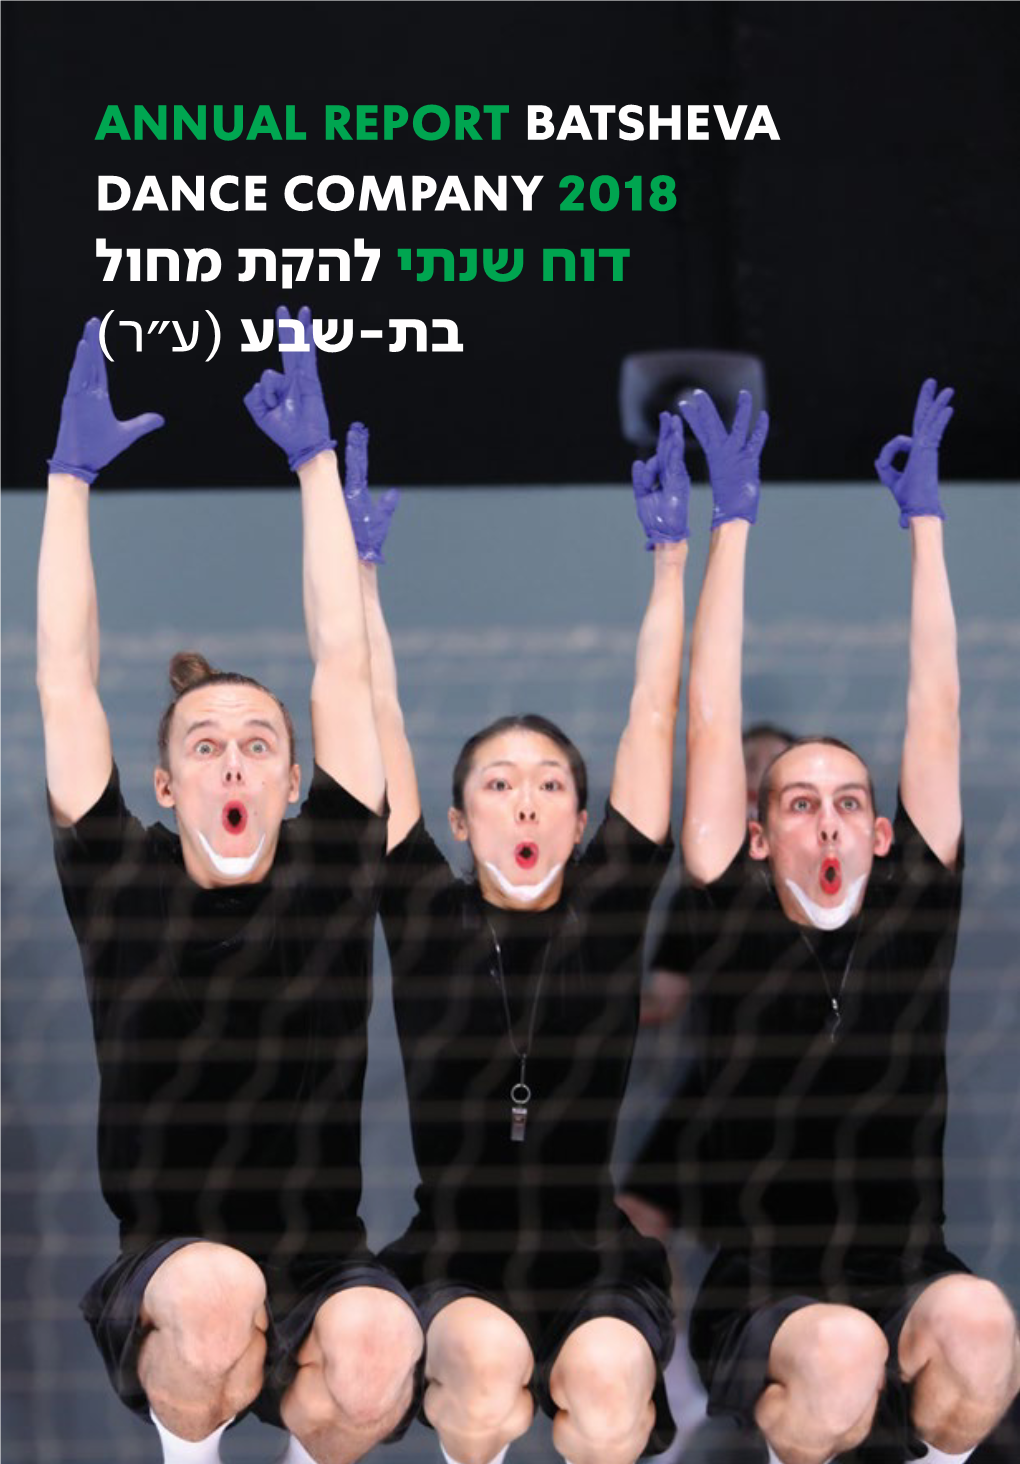 Annual Report Batsheva Dance Company 2018